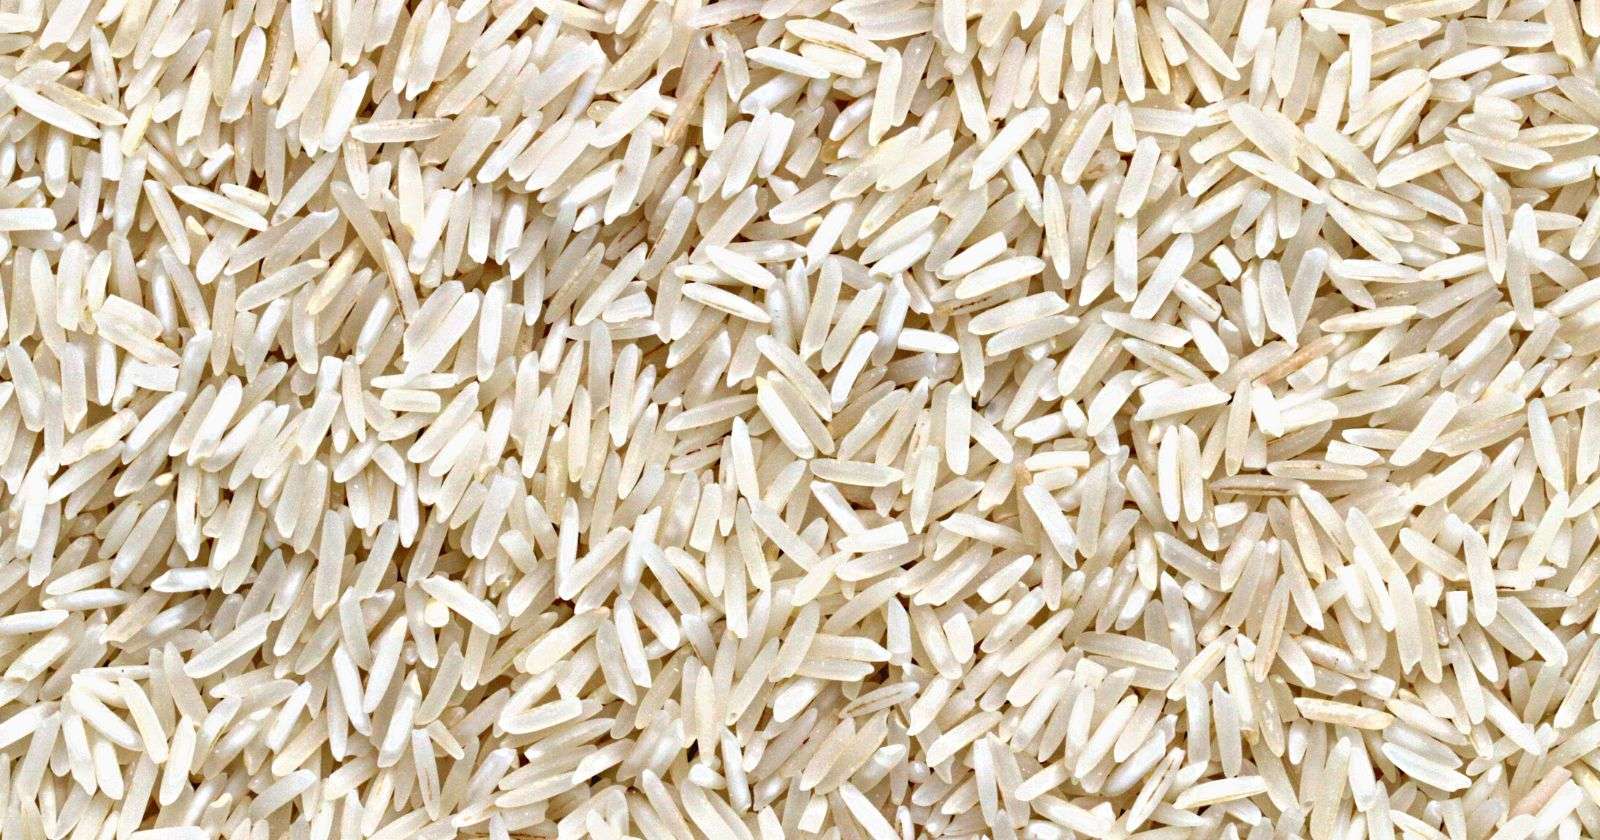 verities of Indian Rice